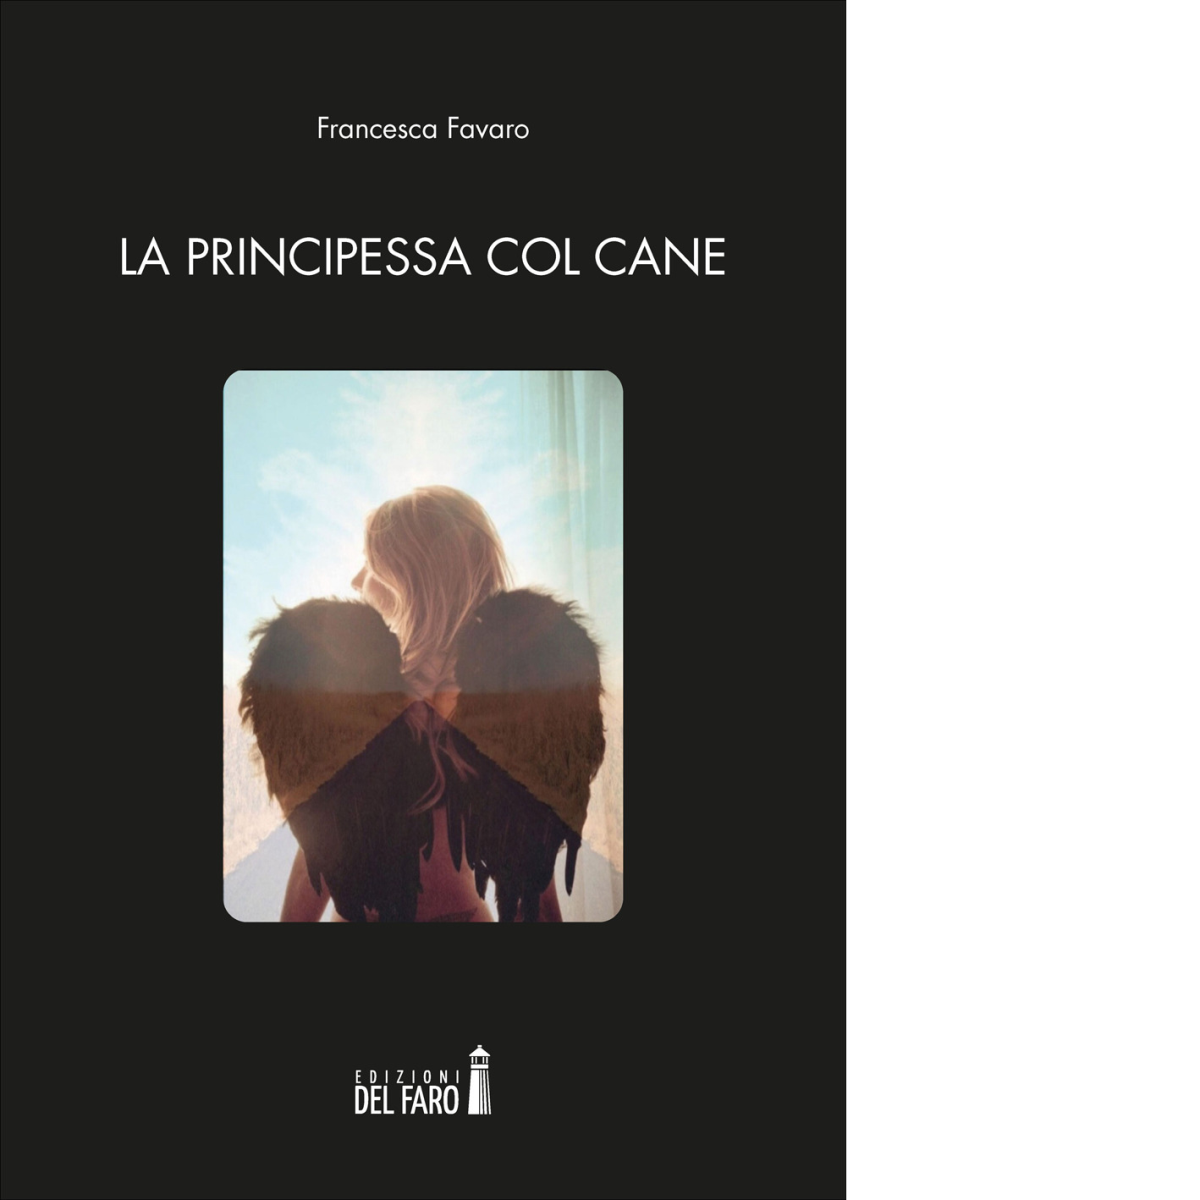 La principessa col cane di Favaro Francesca - Edizioni Del faro, 2020